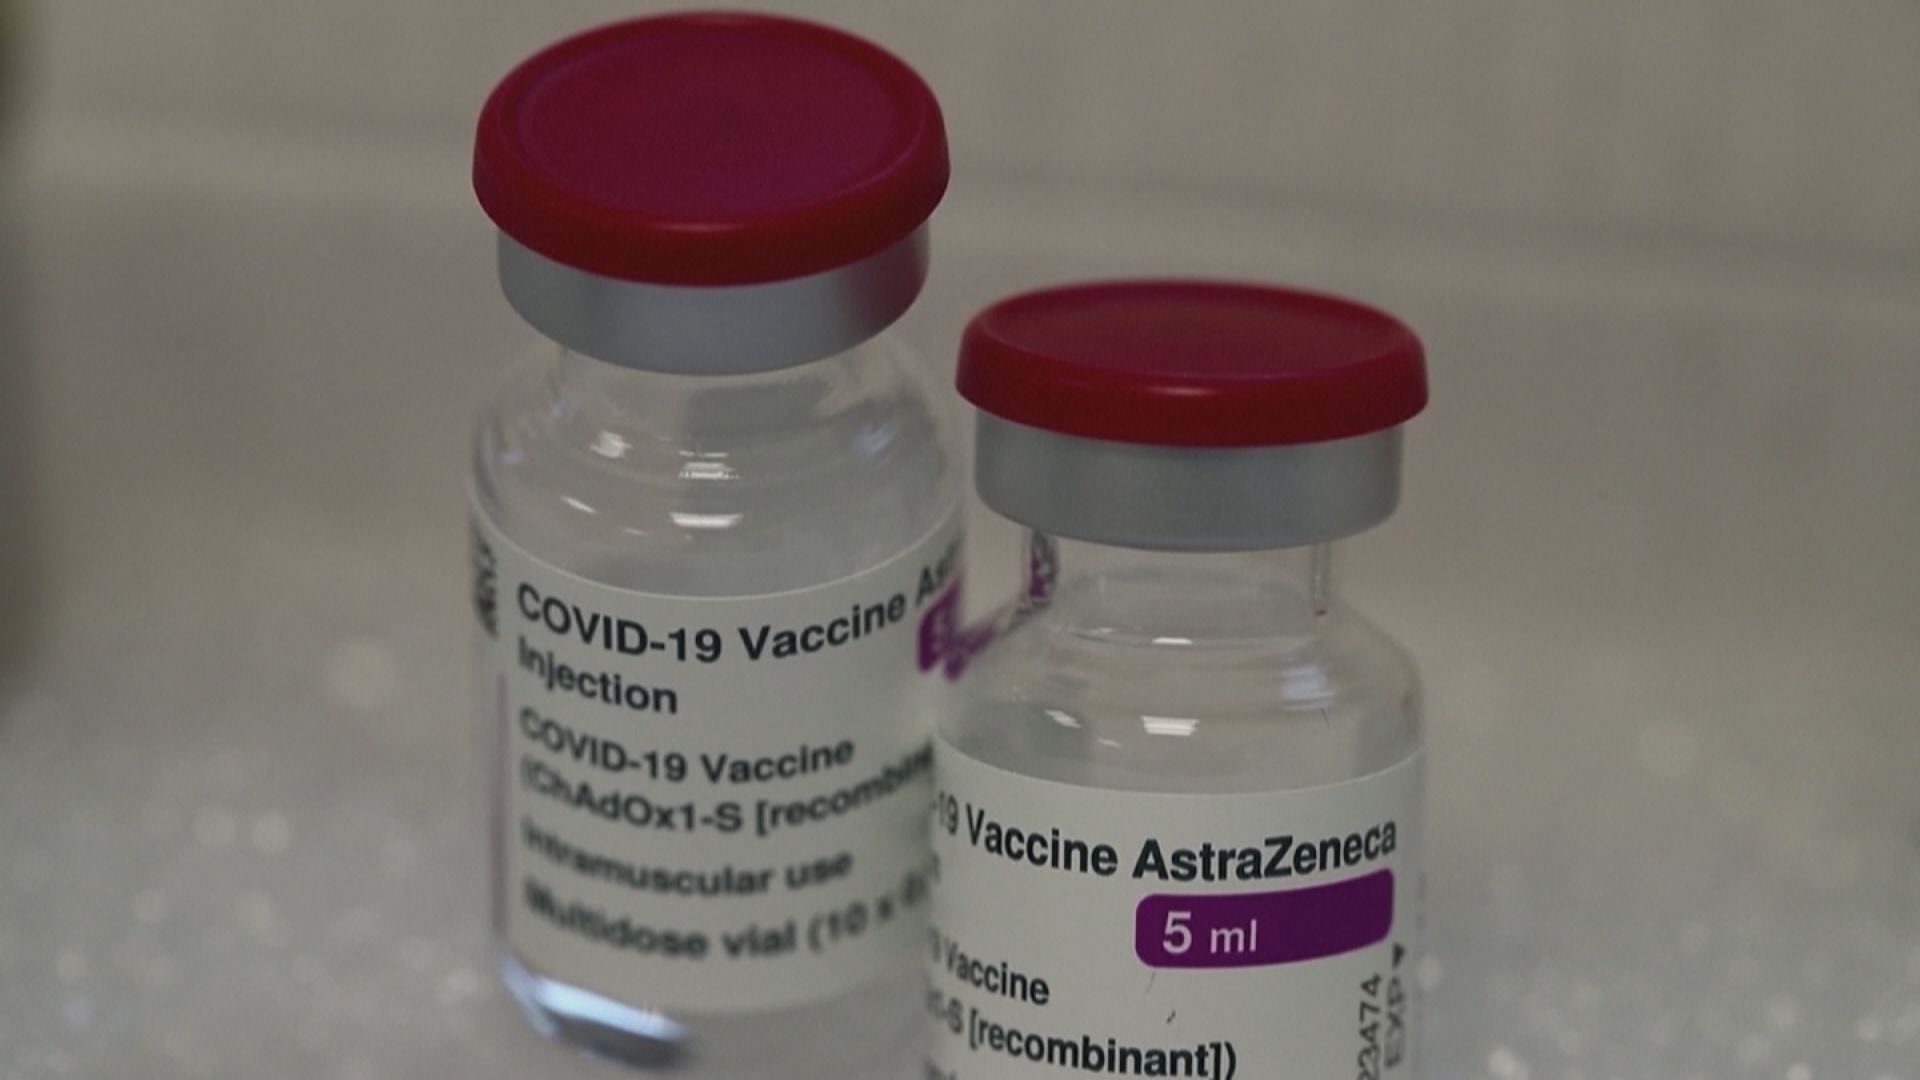 根據丹麥所做的風險評估，接種AZ疫苗每4萬人就有1人可能引發血栓！鄰近的挪威也打算跟進，挪威公共衛生所認為挪威染疫病亡人數少，接種AZ死亡風險大於染疫病逝。